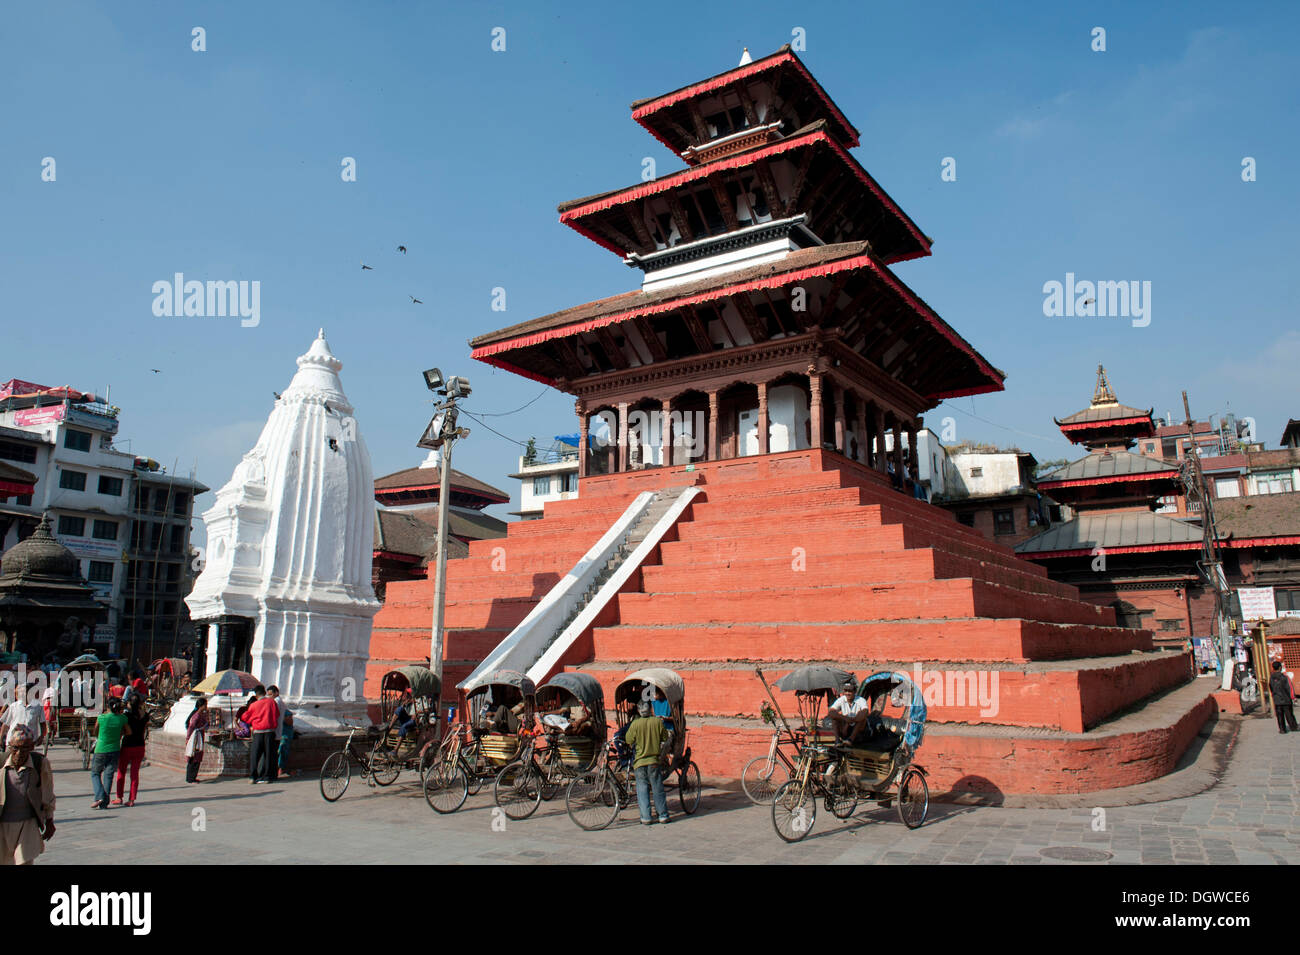 L'hindouisme, trois étages pagode népalaise, l'architecture du temple de Shiva, Newar Maju Deval, blanc, shikhara Durbar Square Banque D'Images